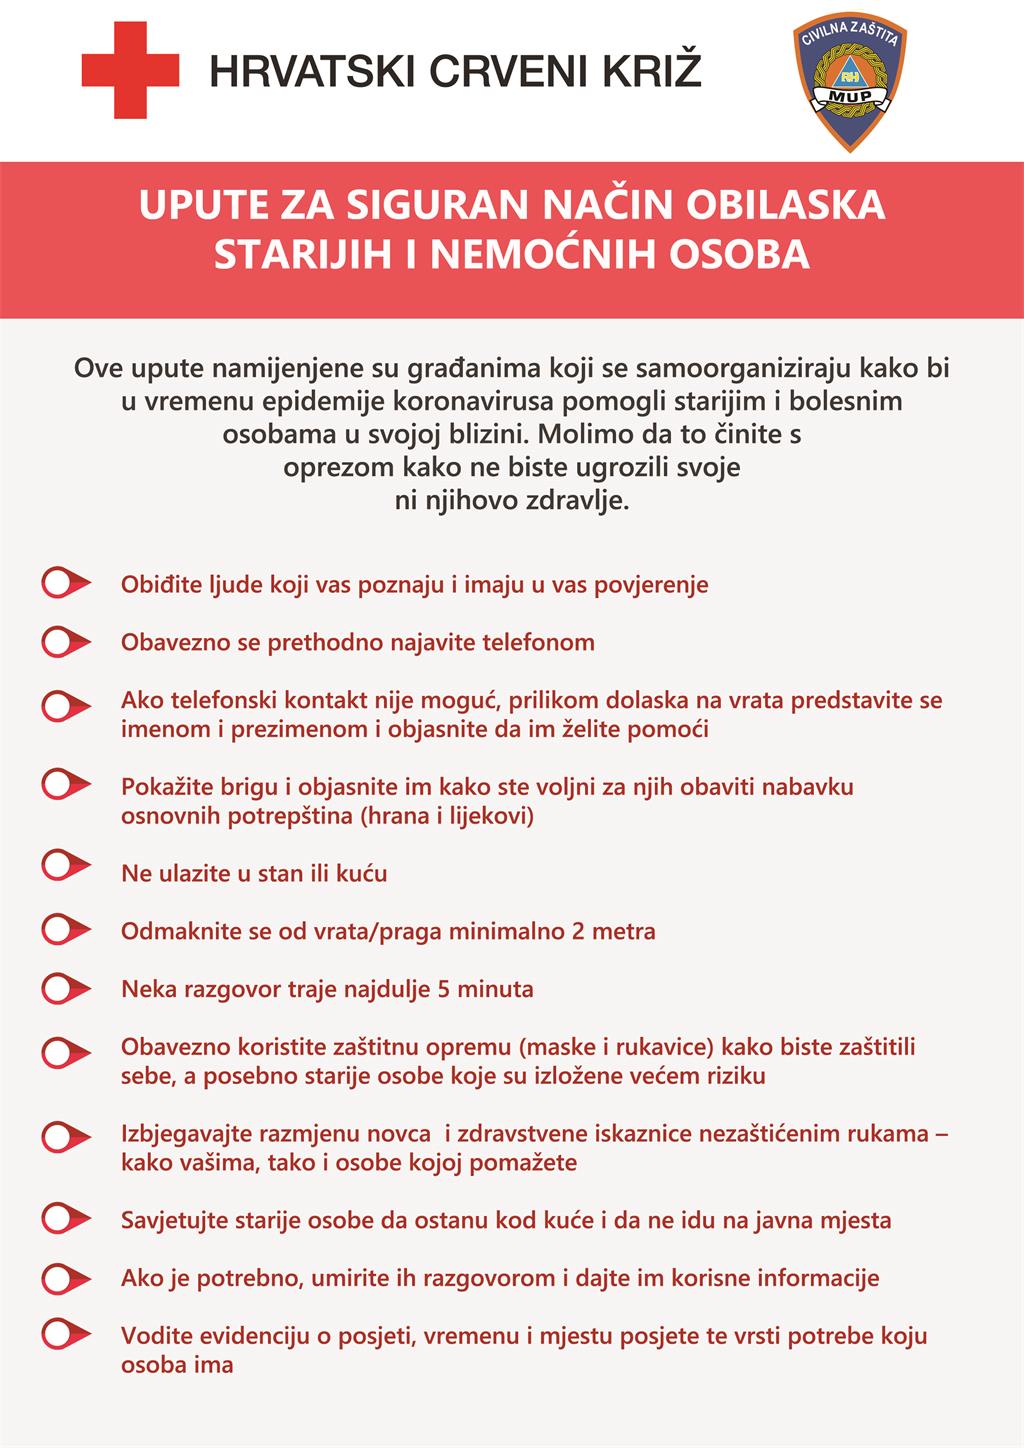 Upute za pomoć starijima u doba epidemije koronavirusa - Hrvatski Crveni križ